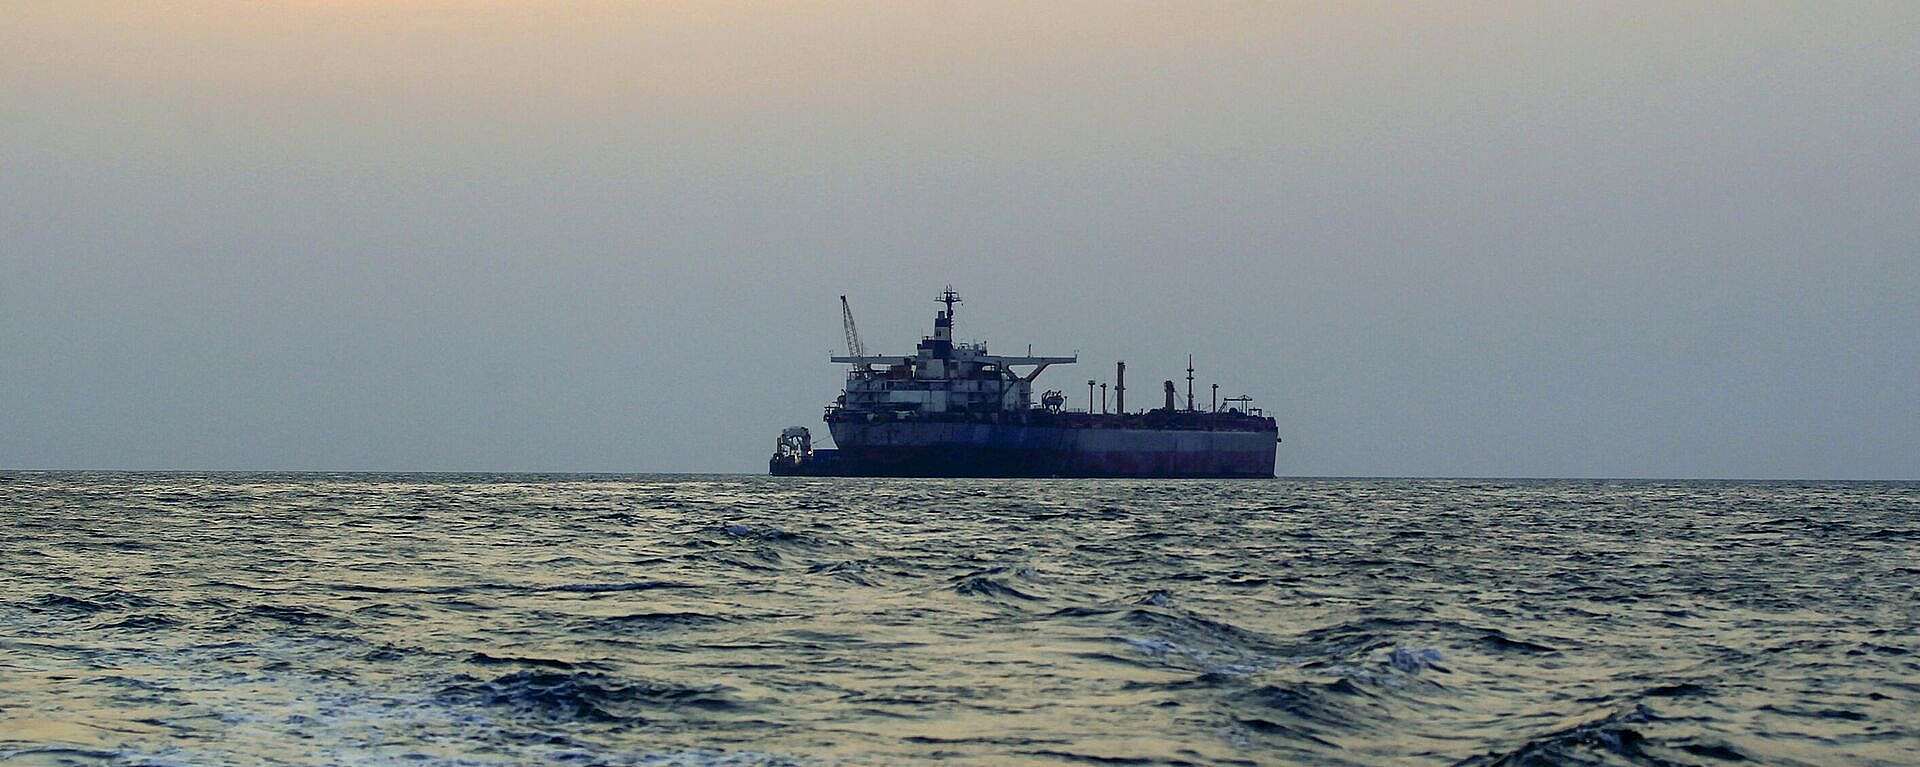 شركة بريطانية تكشف تفاصيل مهمة عن السفينة الأمريكية التي استهدفتها قوات صنعاء اليوم